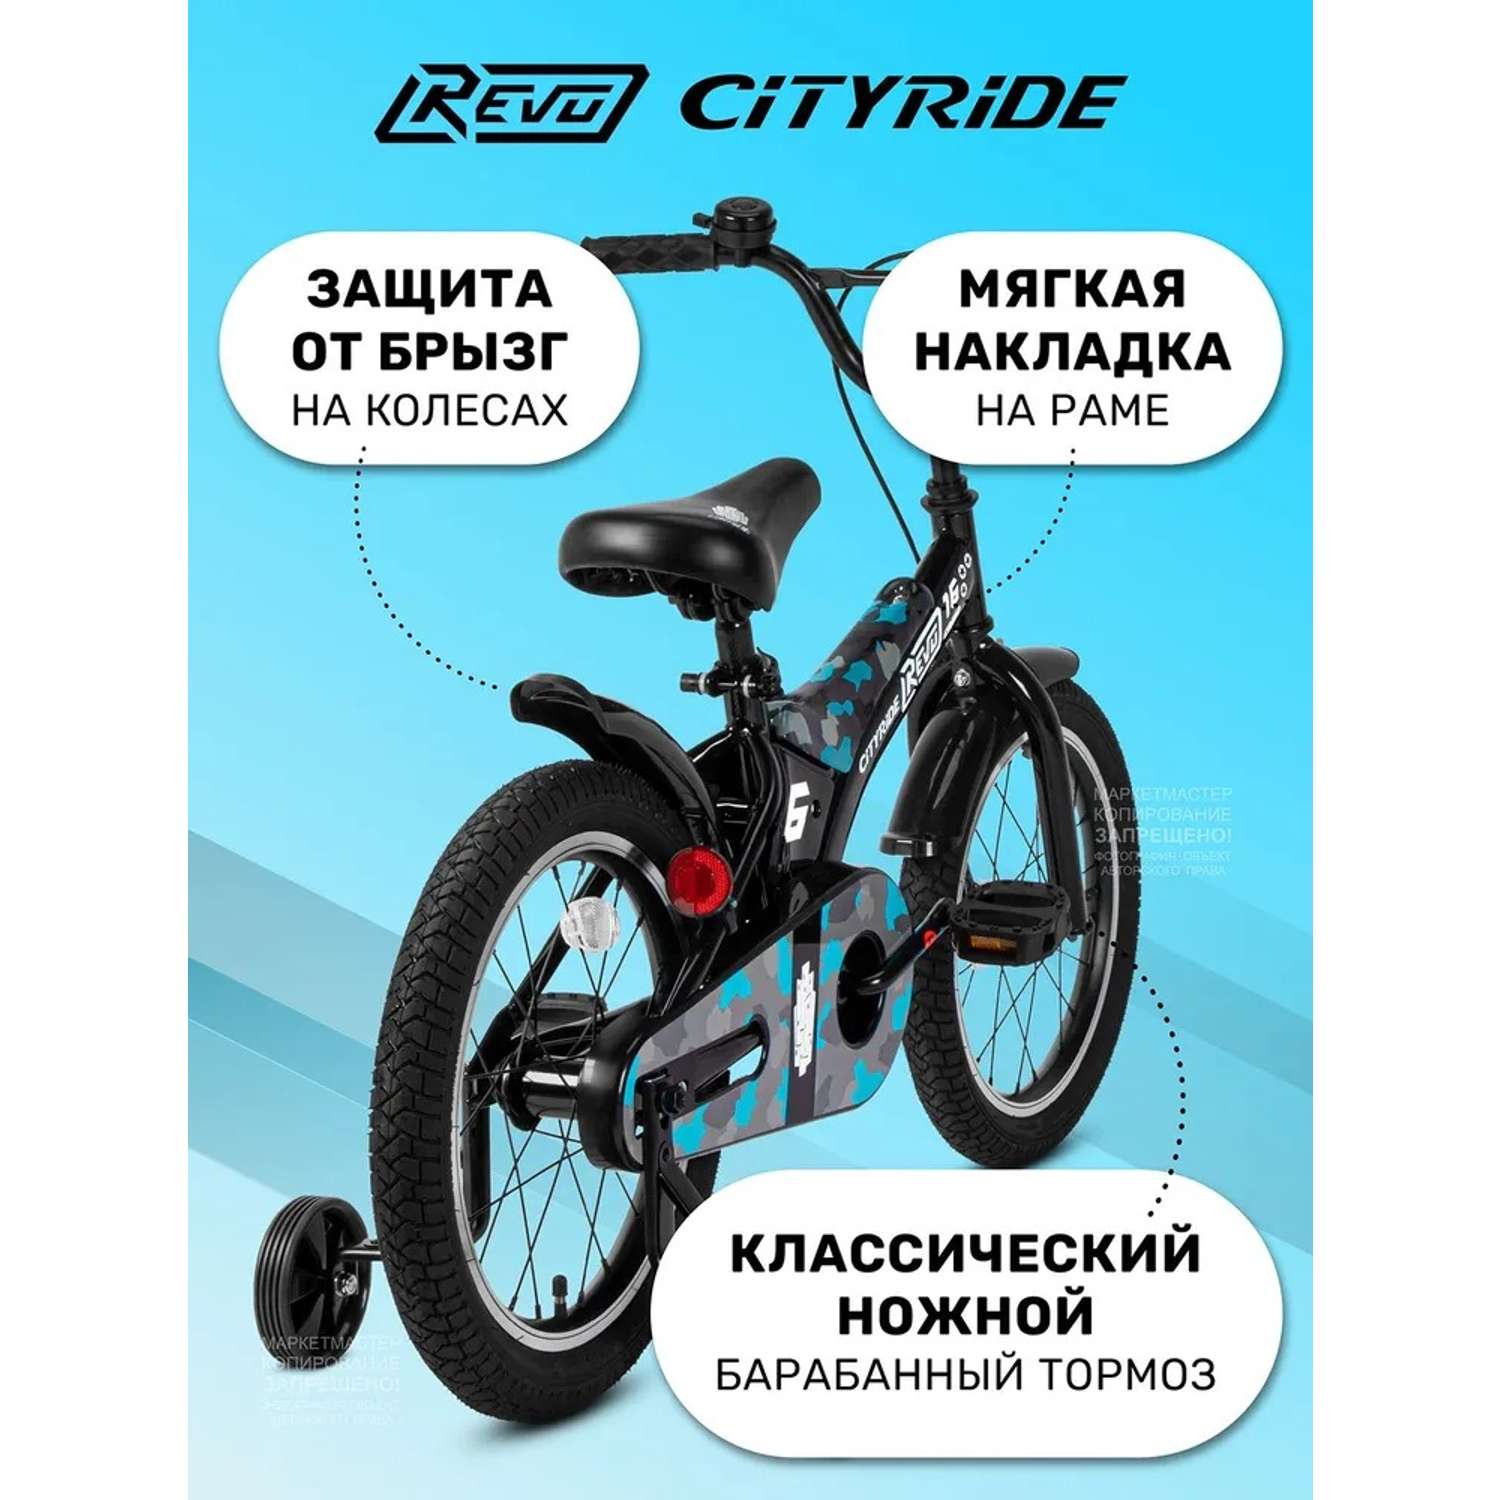 Детский велосипед CITYRIDE Двухколесный Cityride REVO Рама сталь Кожух цепи 100% Диски алюминий 16 Втулки сталь - фото 4